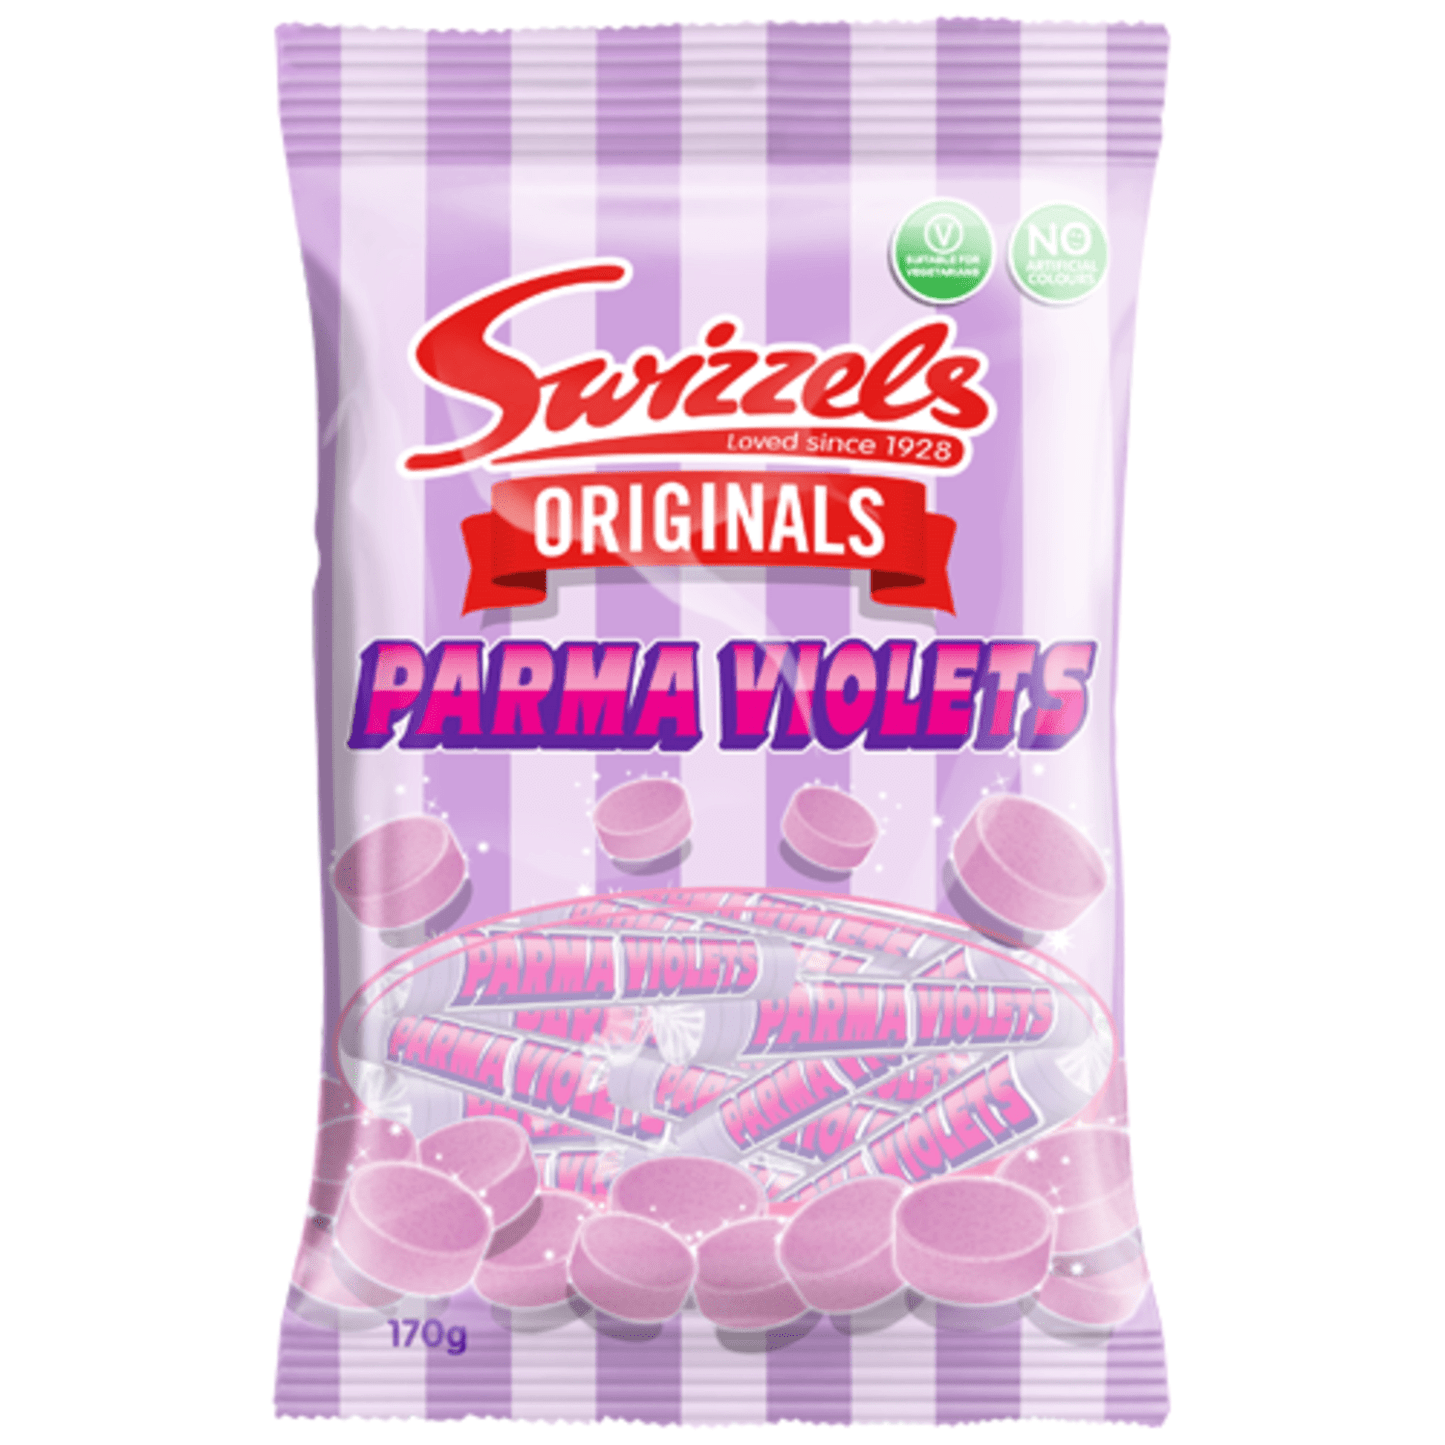 Swizzels Parma Violets